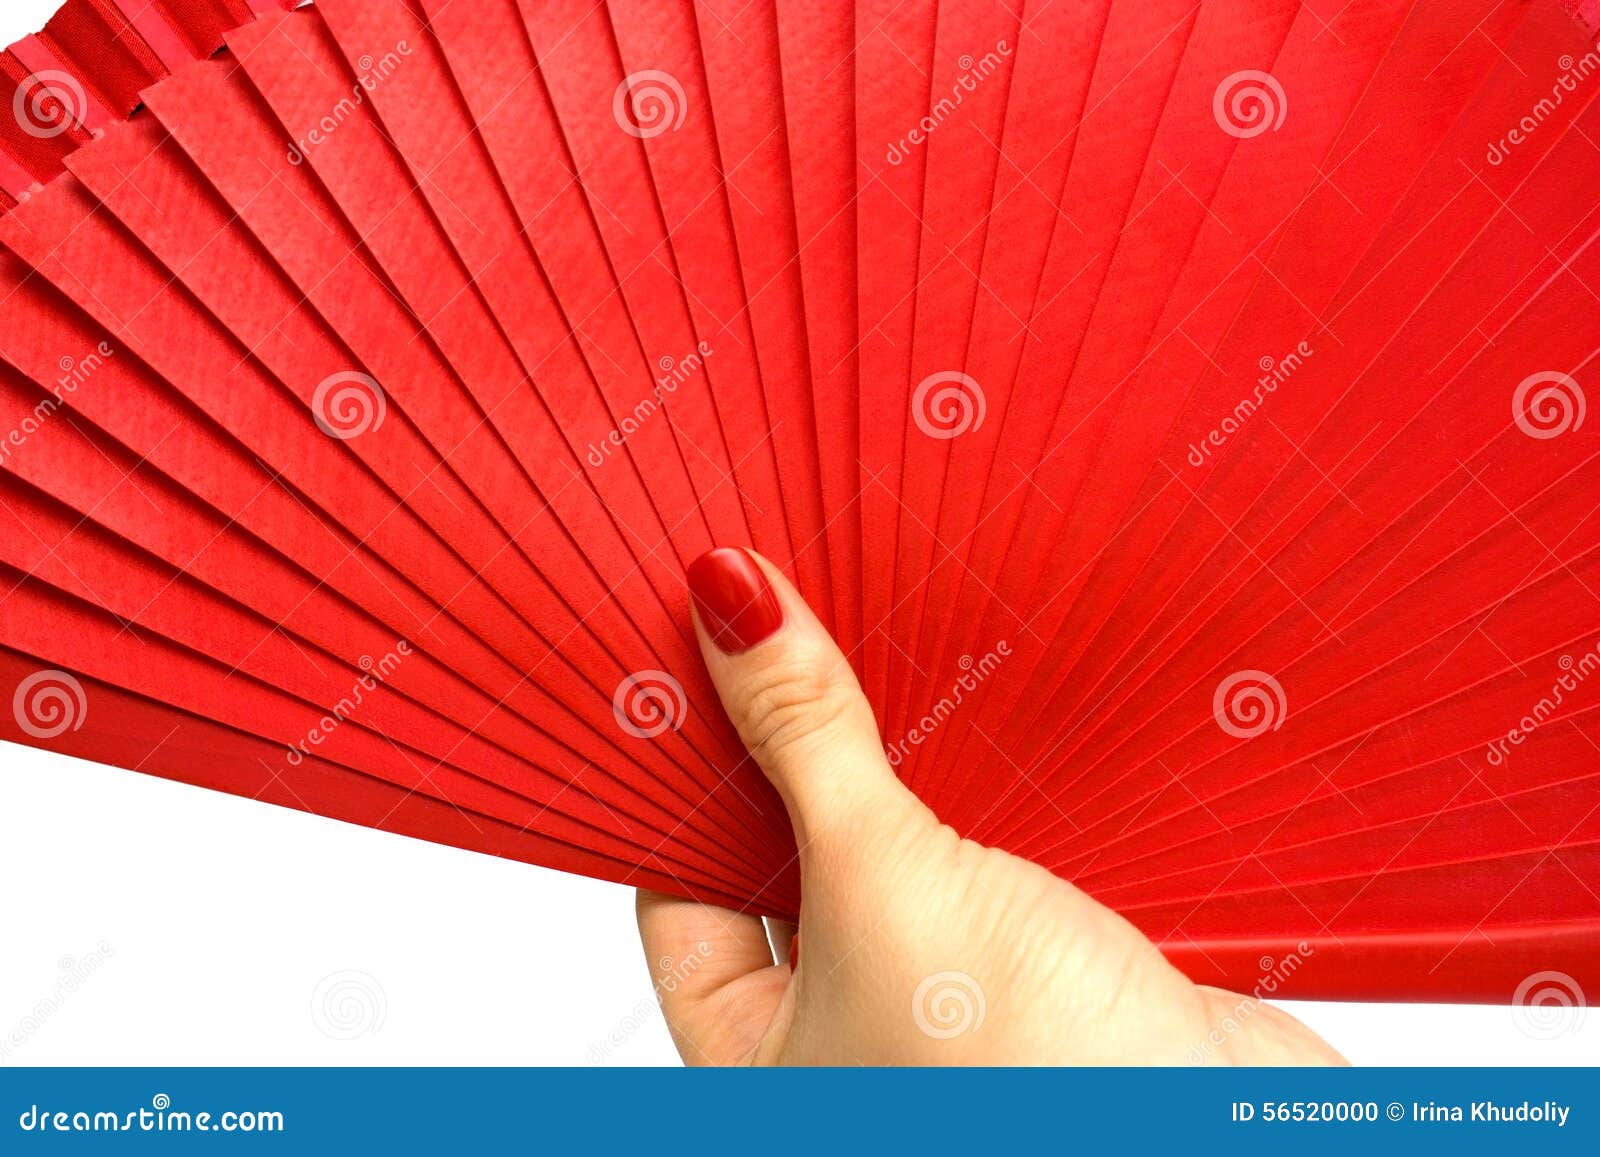 Red fan